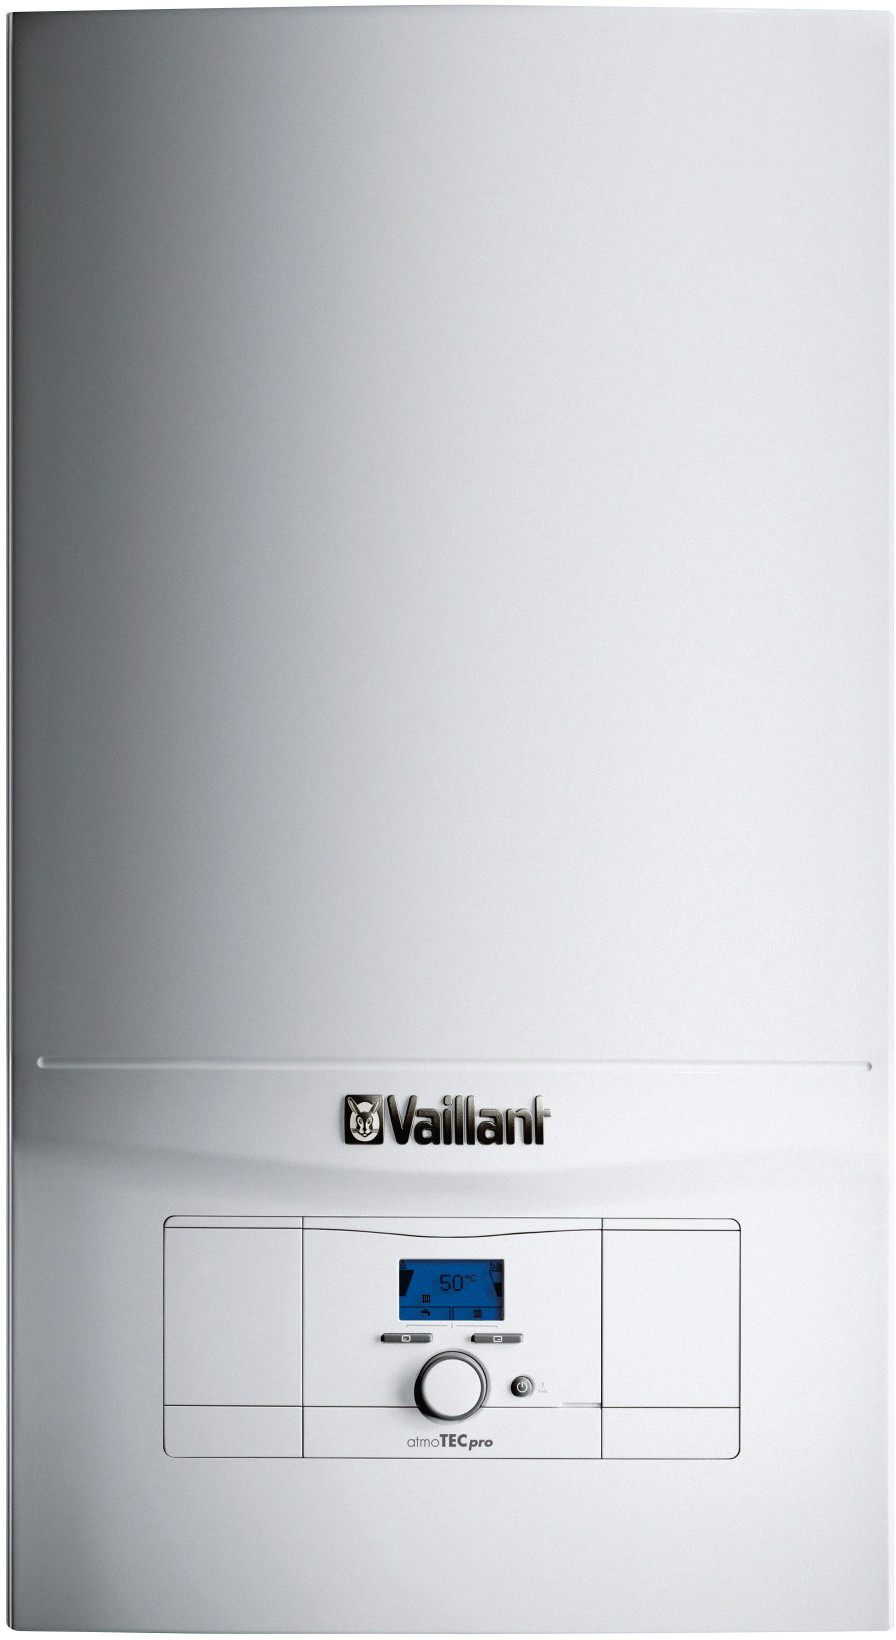 Газовый котел Vaillant atmoTec Pro VUW 200/5-3 в интернет-магазине, главное фото